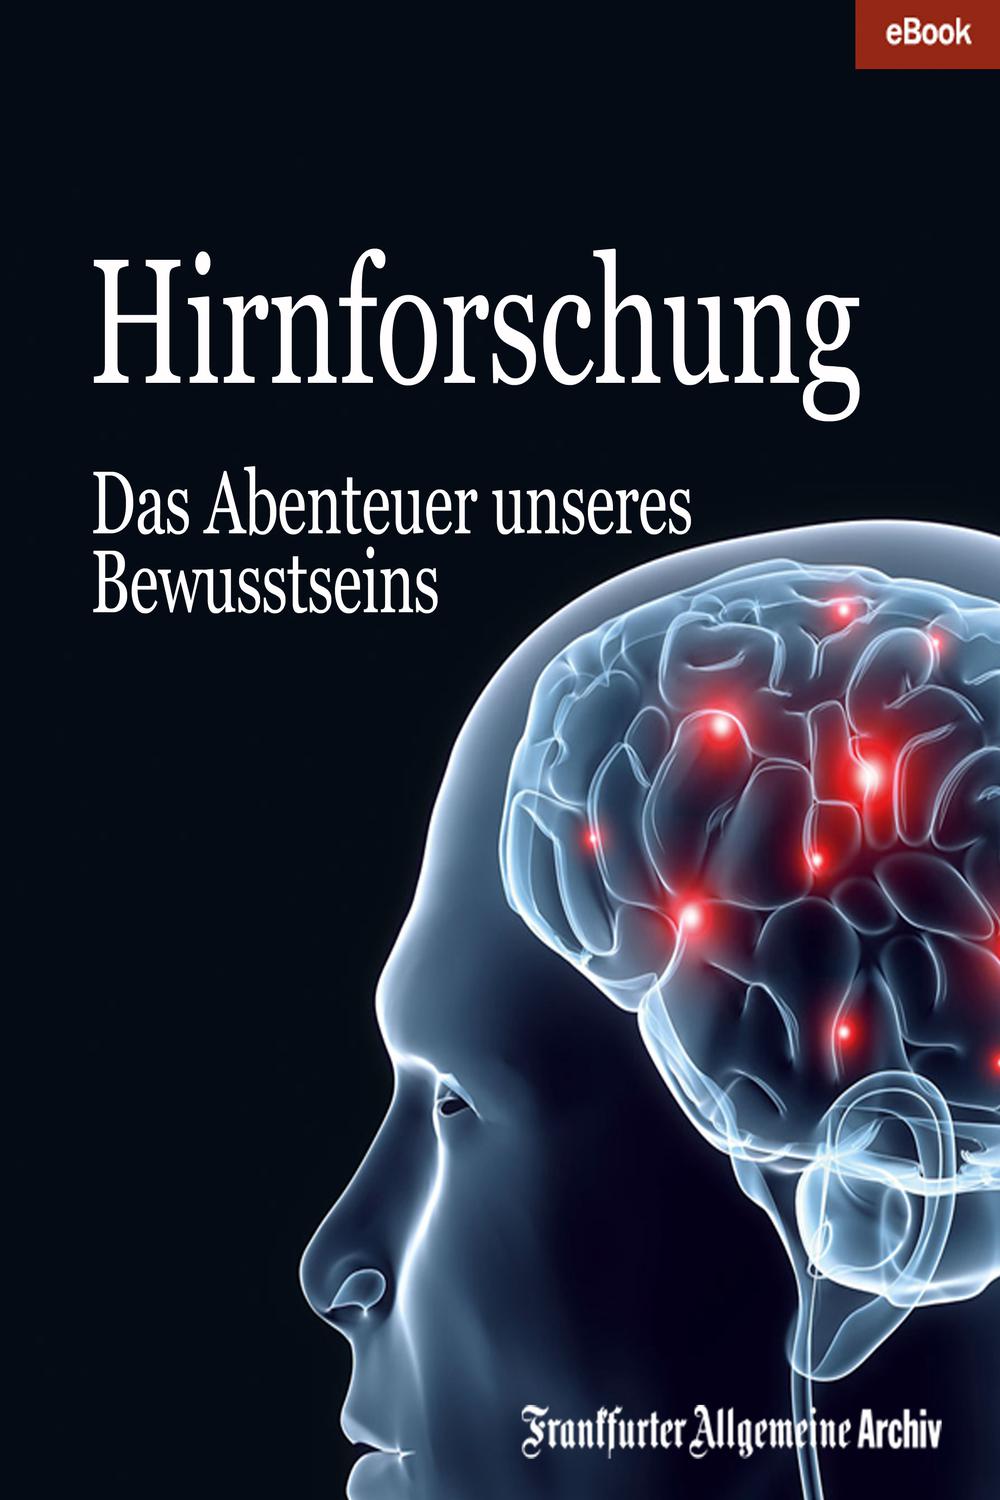 Hirnforschung - Frankfurter Allgemeine Archiv